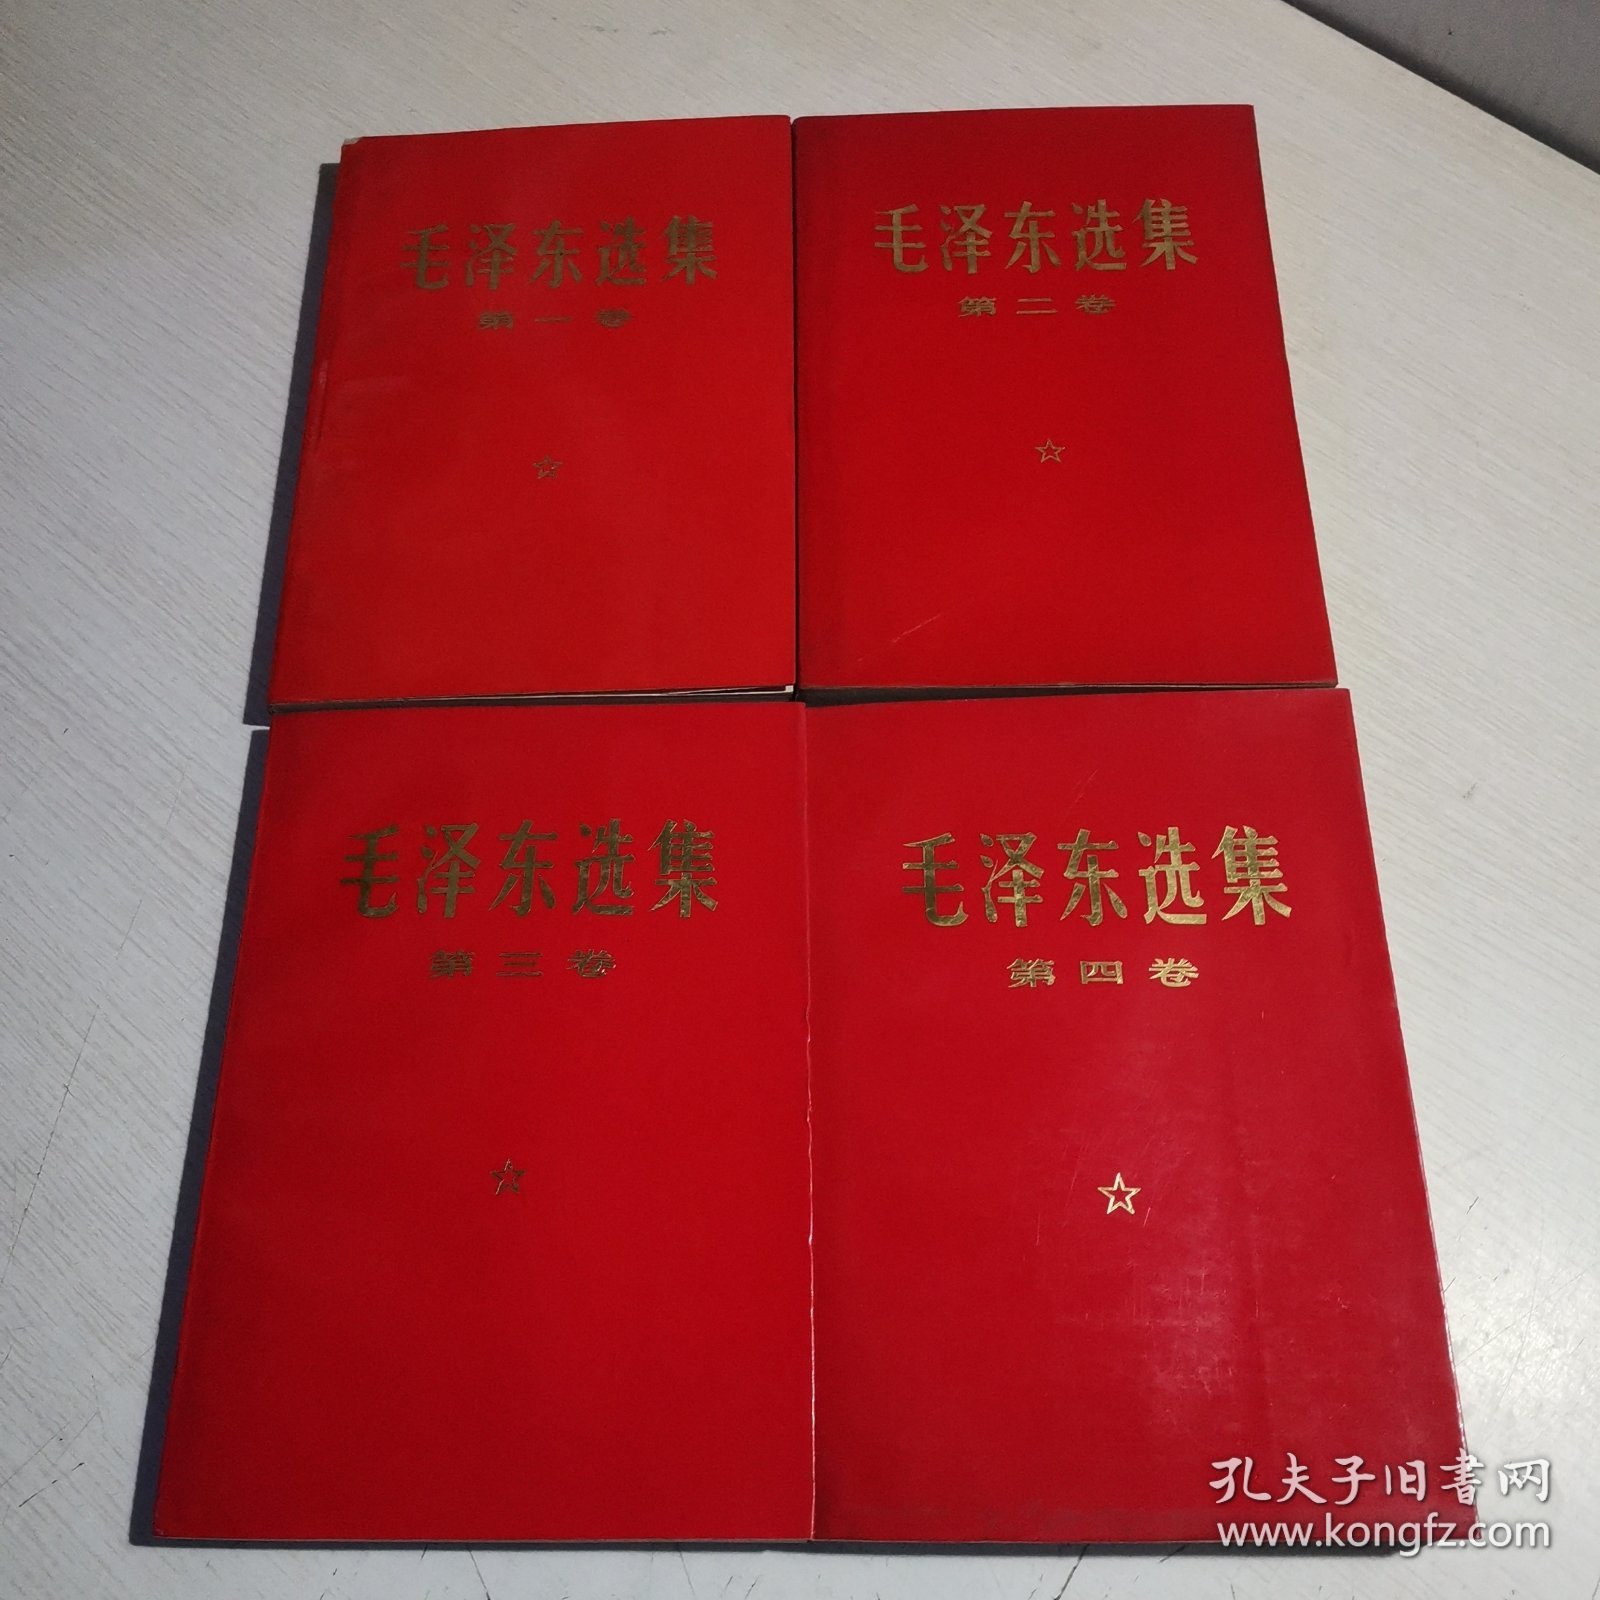 毛泽东选集 1—4卷 红皮本